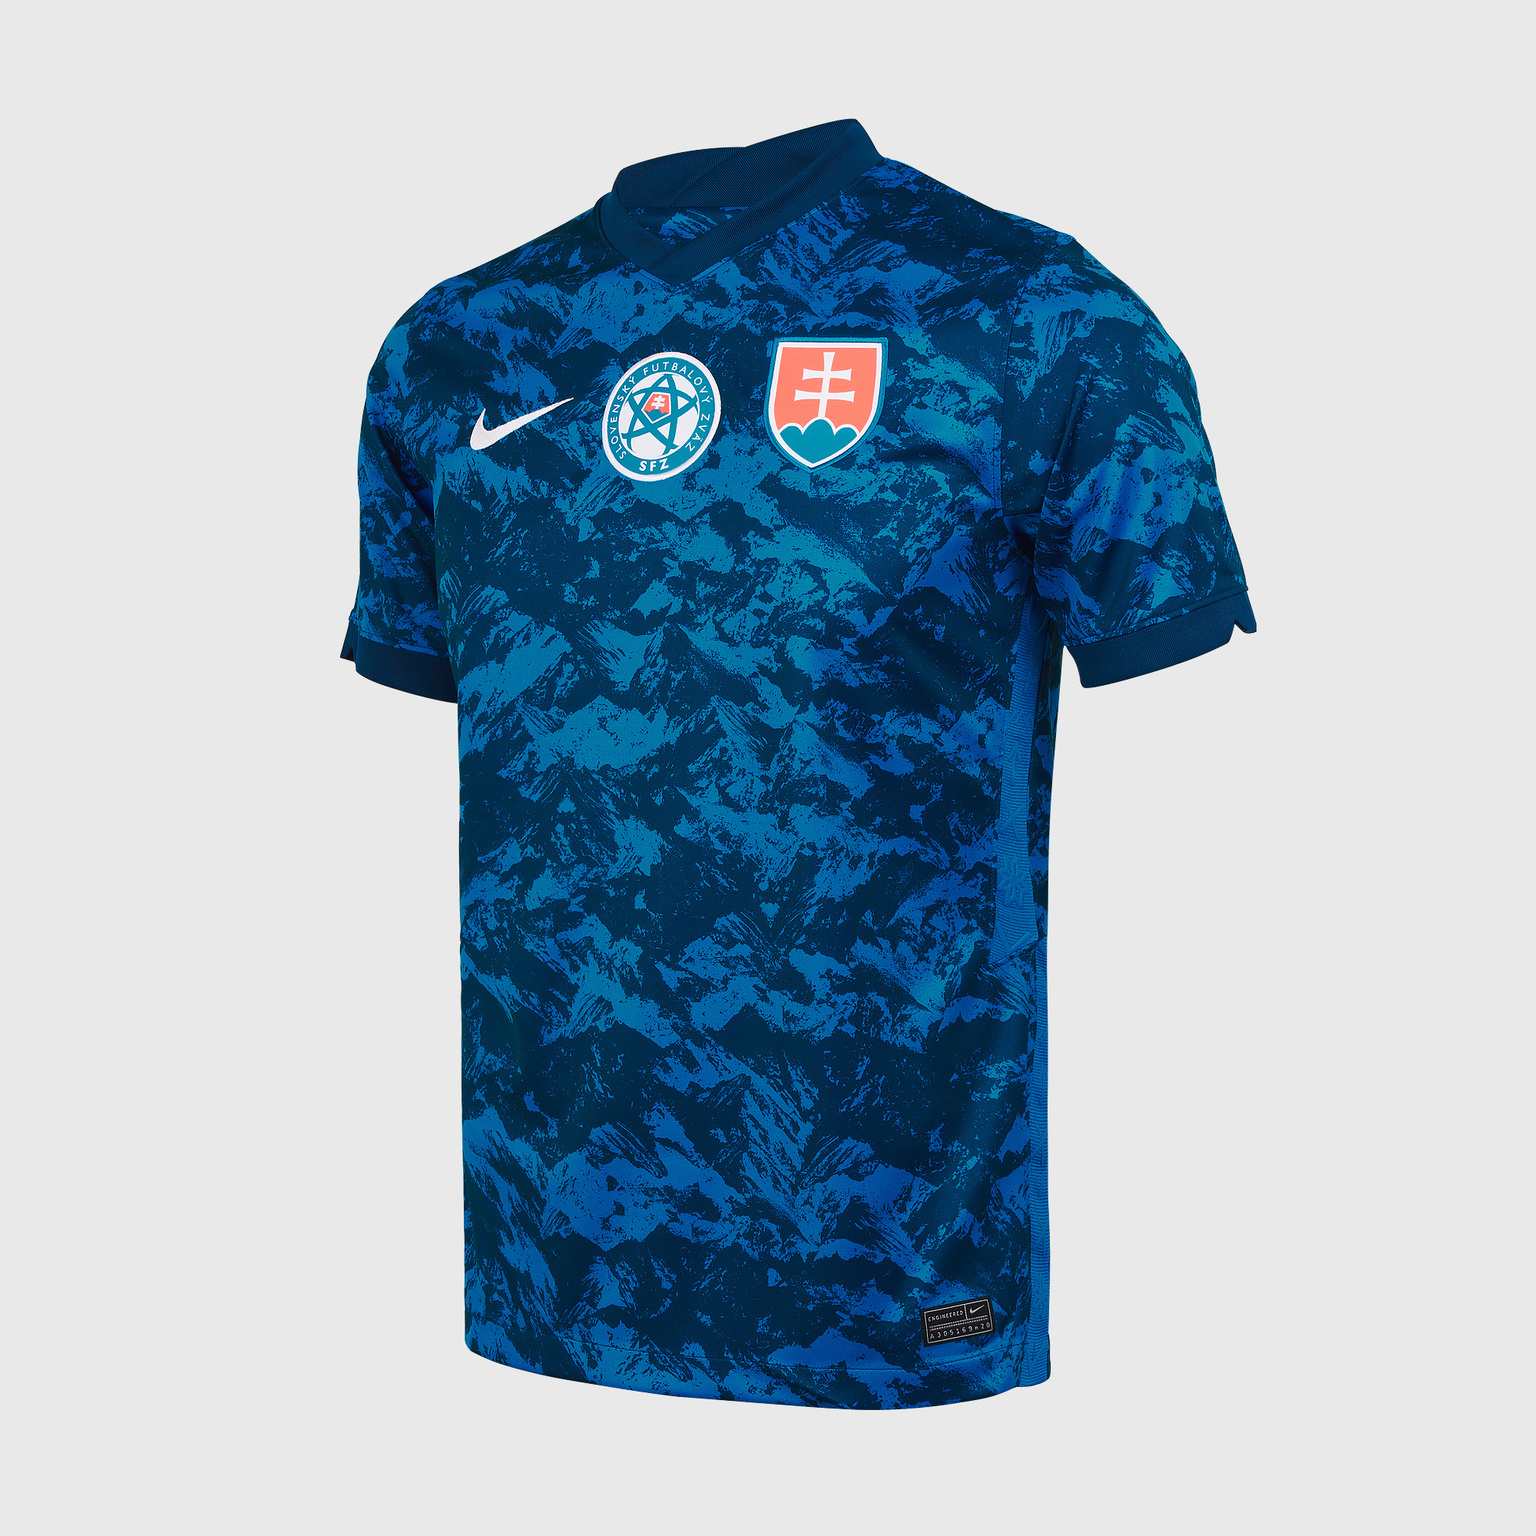 Футболка игровая домашняя Nike сборной Словакии сезон 2020/21